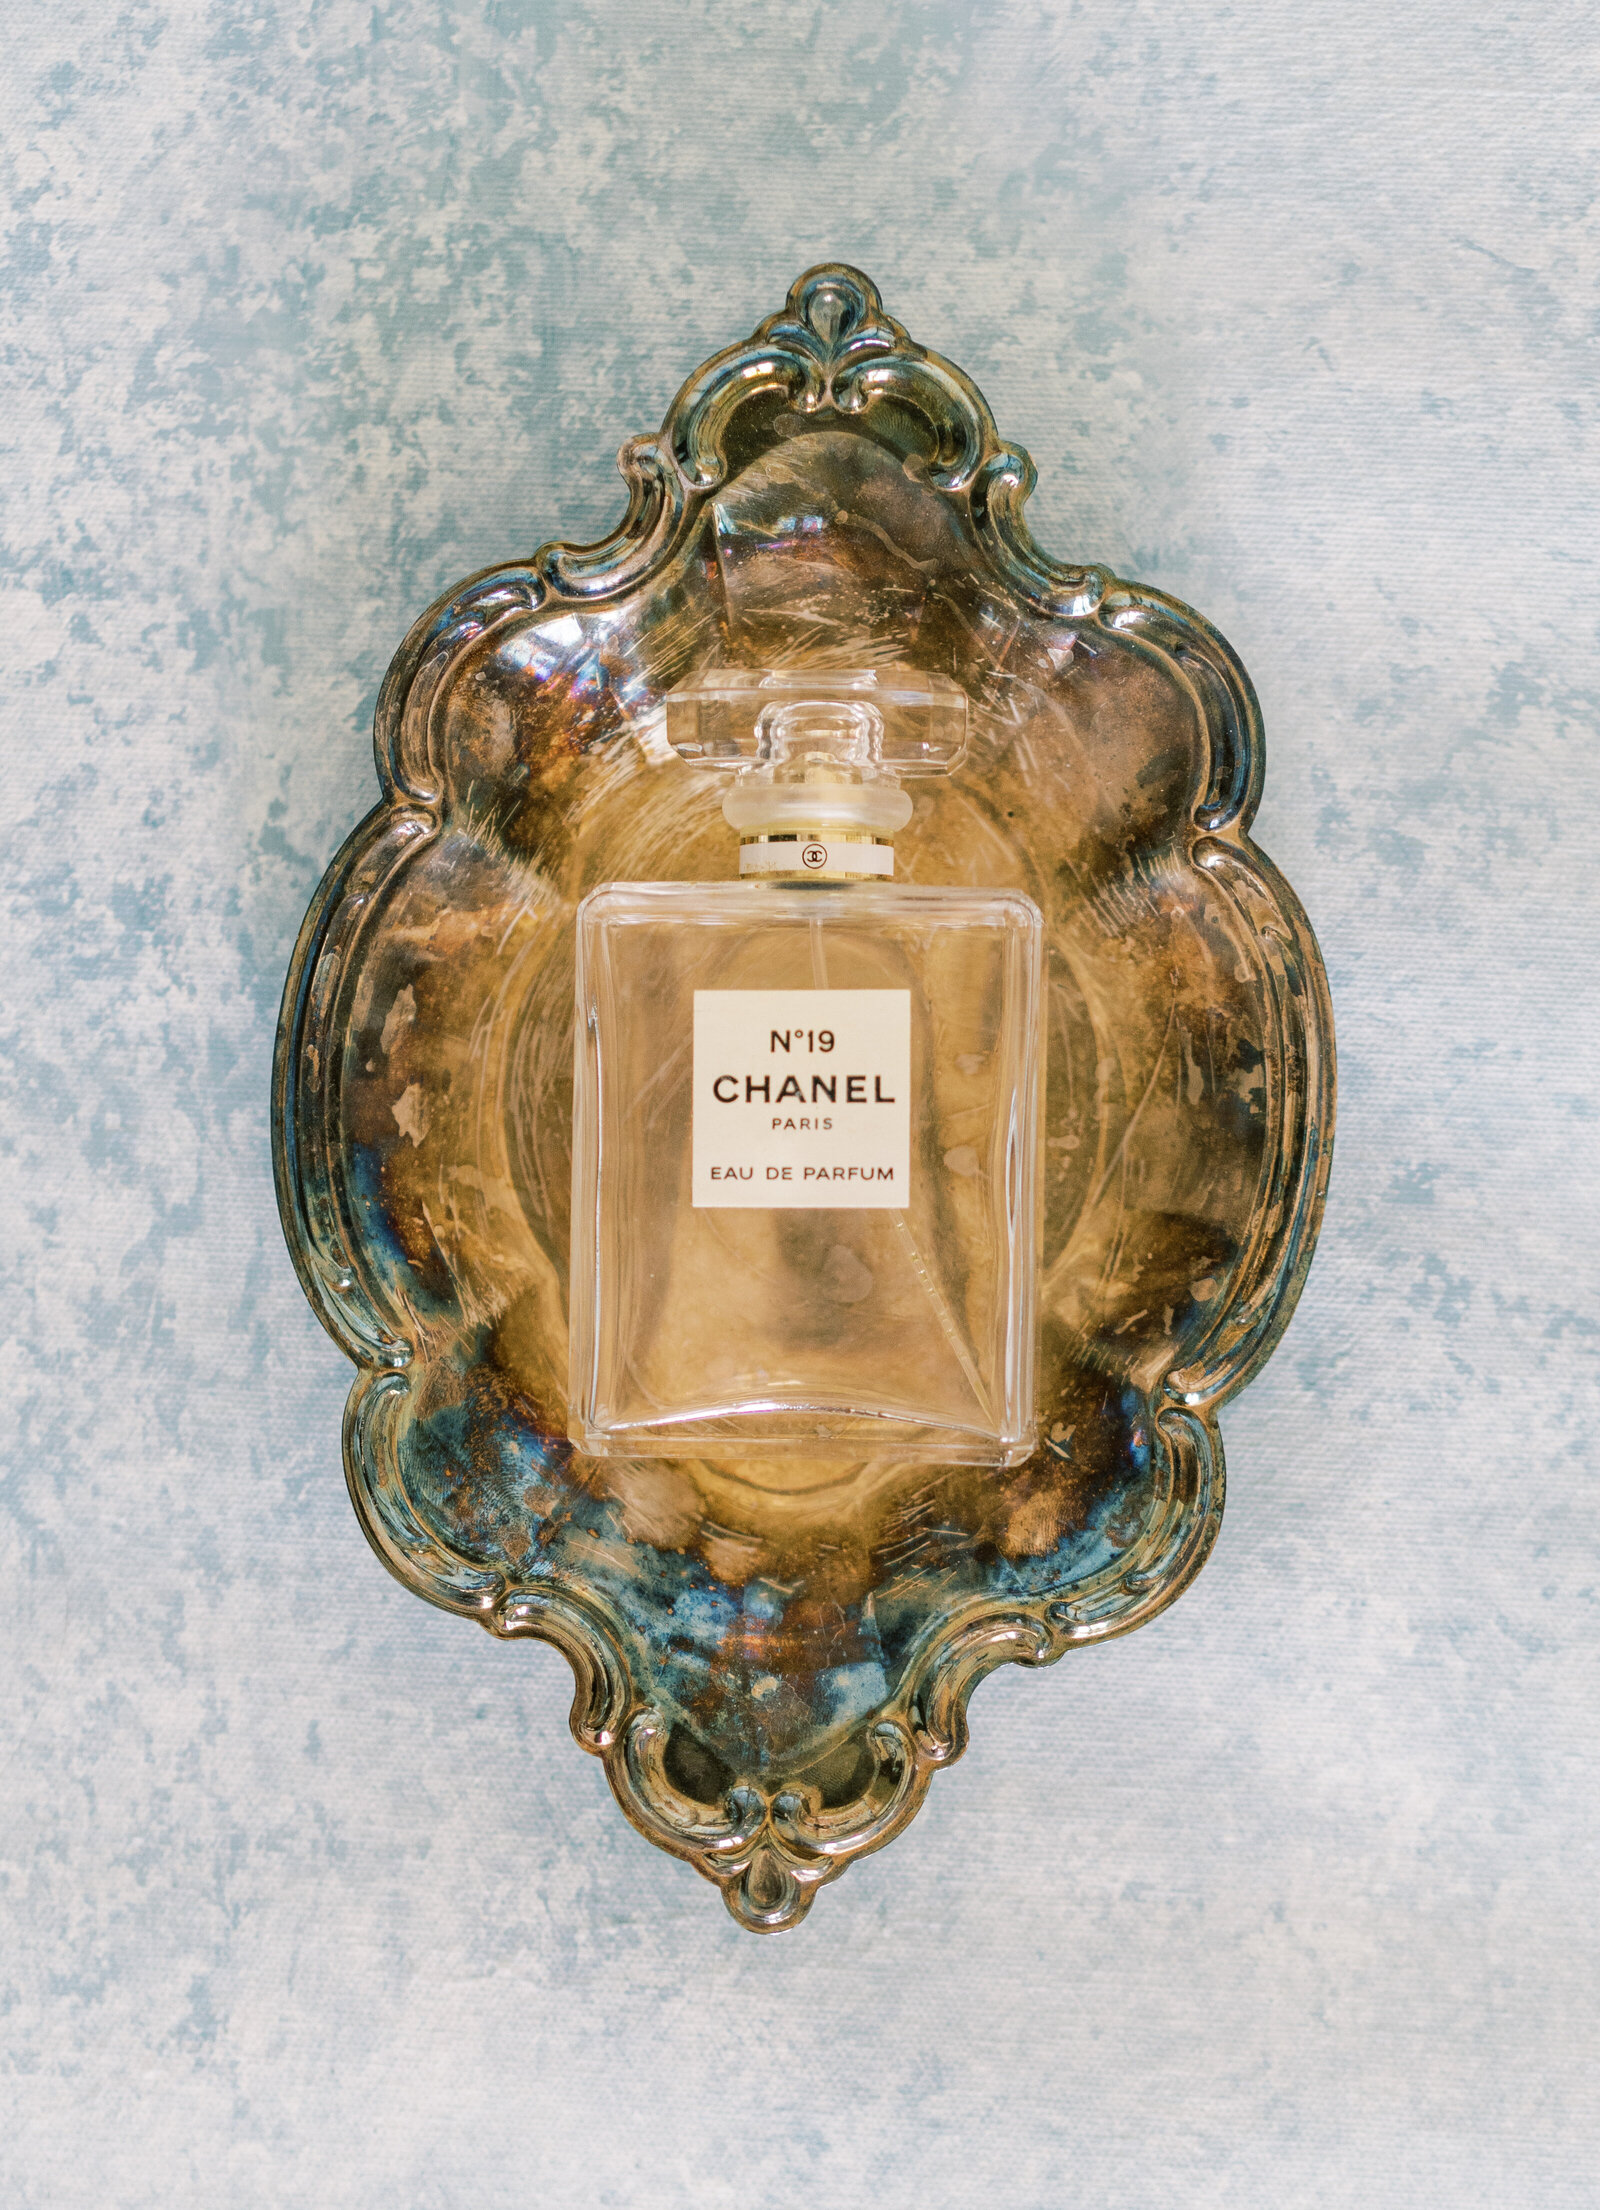 Portrait of a Chanel No.19 perfume bottle atop a bronze antique dish